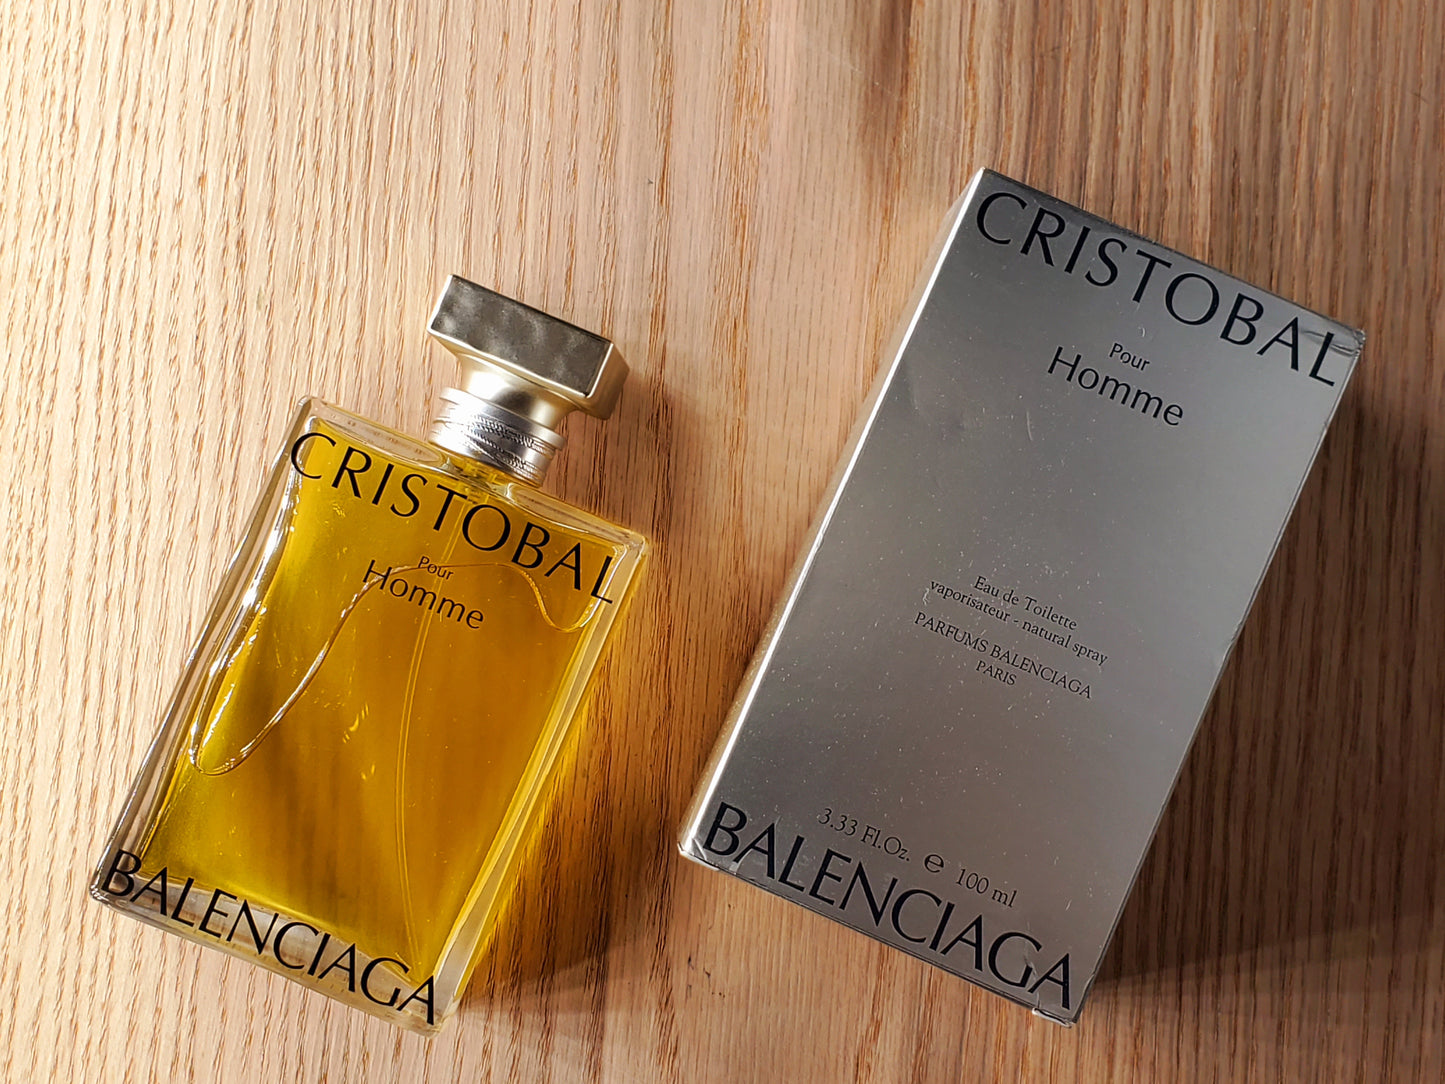 Cristobal Perfume by Balenciaga 1.7 oz Eau de Parfum Spray for Women